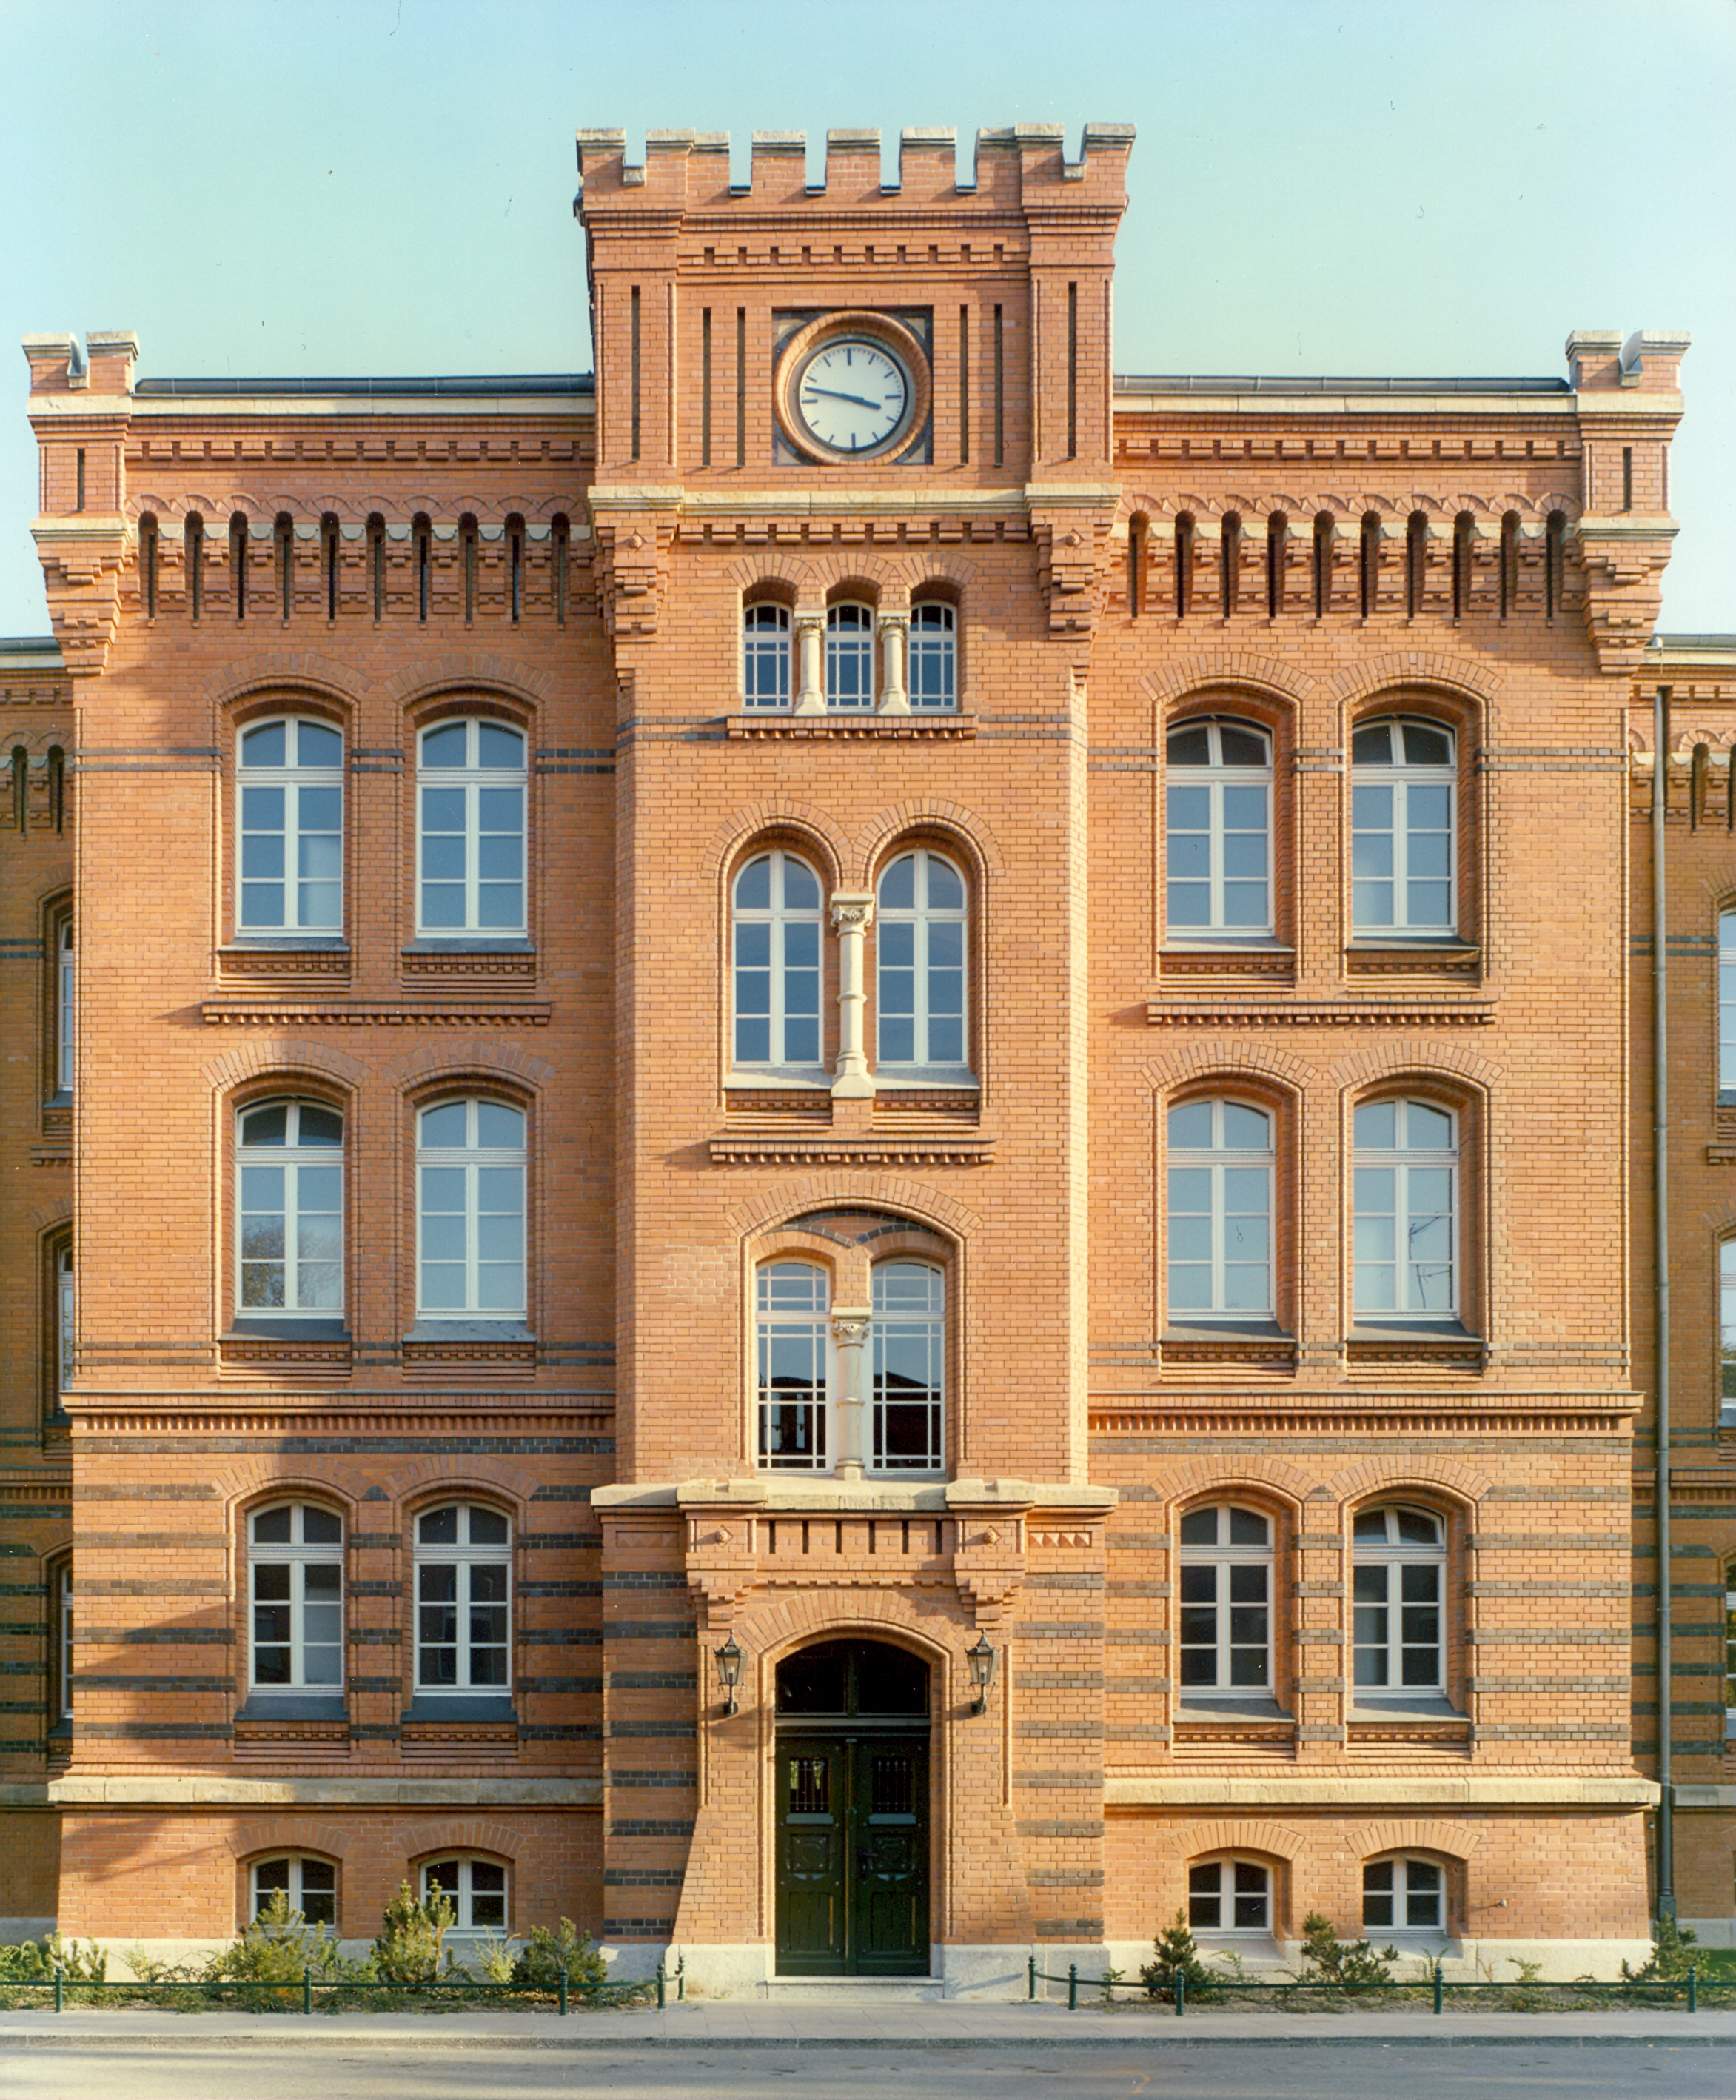 Image 'Smuts Barracks, Berlin'